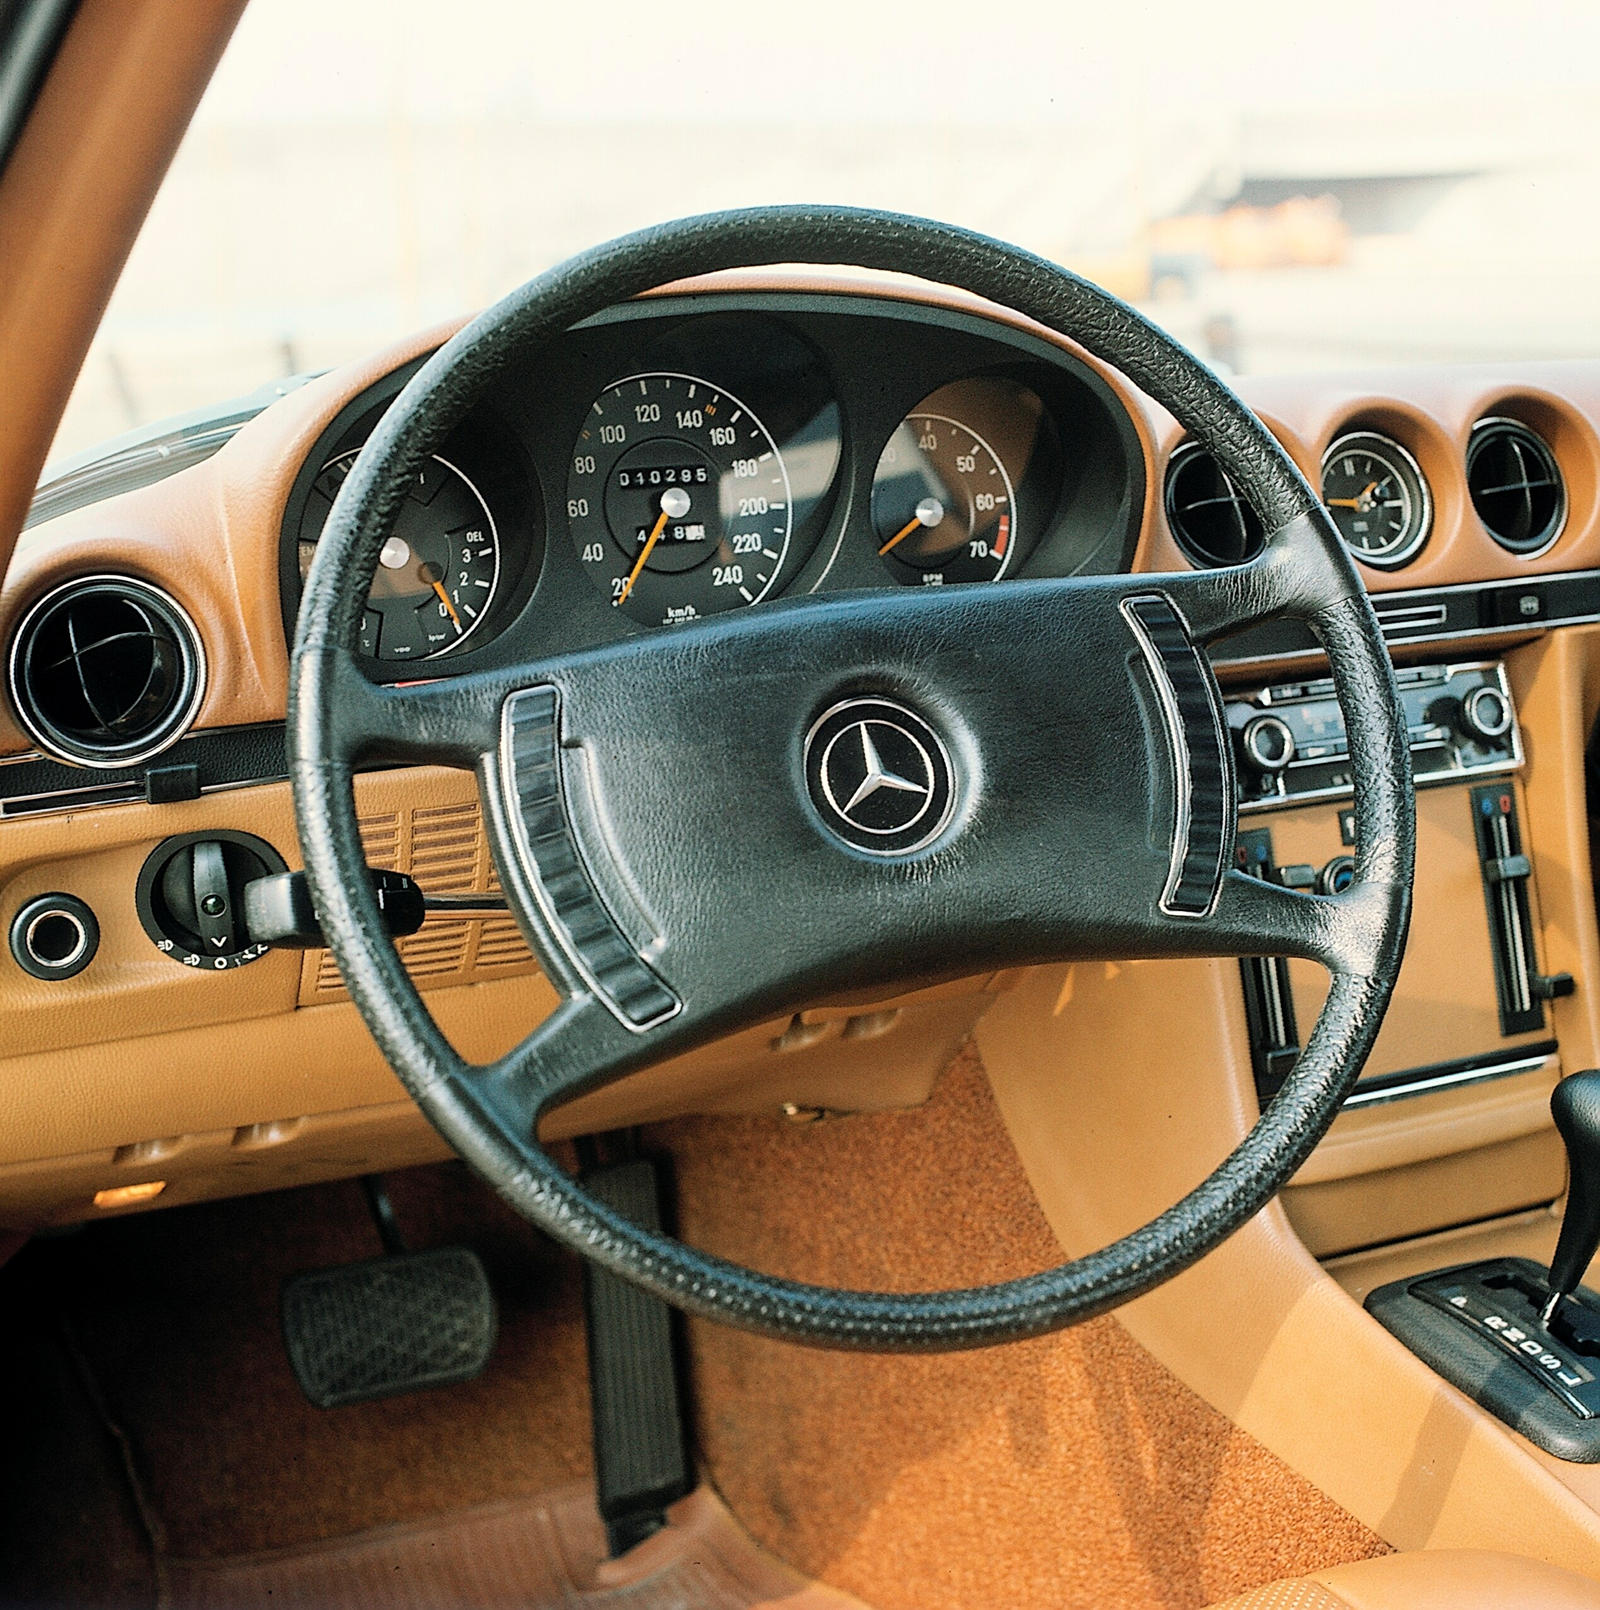 За последние 120 лет язык дизайна рулей Mercedes значительно изменился. Фактически, компания (которая тогда называлась Daimler-Motoren-Gesellschaft) была одной из первых, кто перешел от простого рулевого механизма к более функциональному рулевому кол